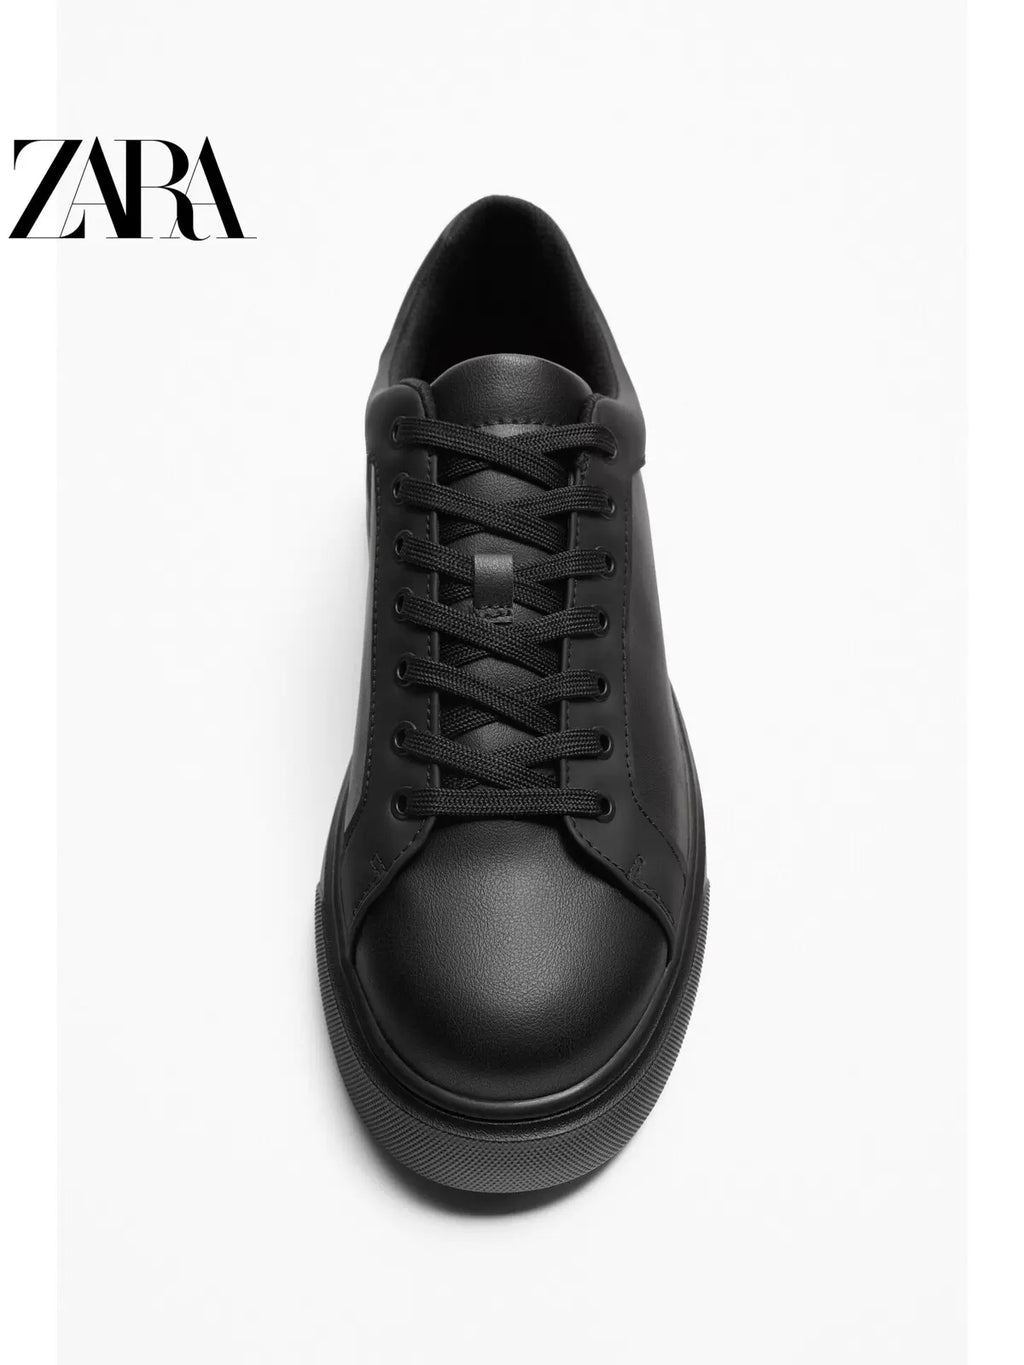 Importé - ZARA NEW - Chaussure Homme Sport Baskets Et Loisirs Confortables  - Noir